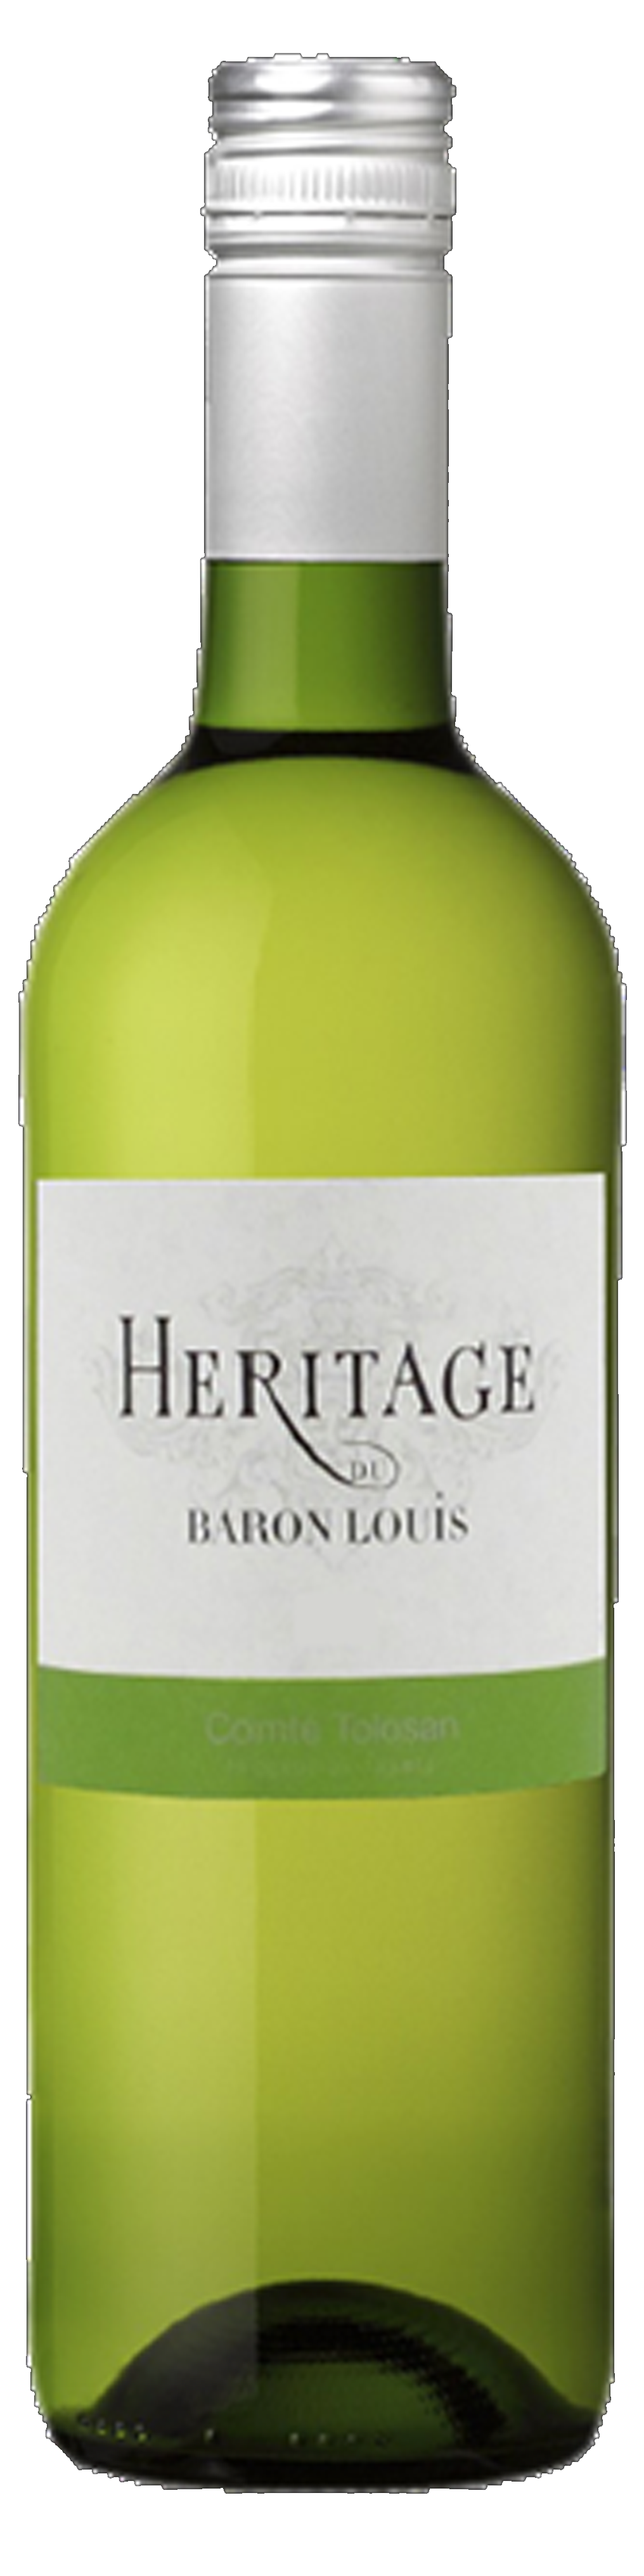 Bottle shot of 2015 Héritage de Baron Louis Blanc